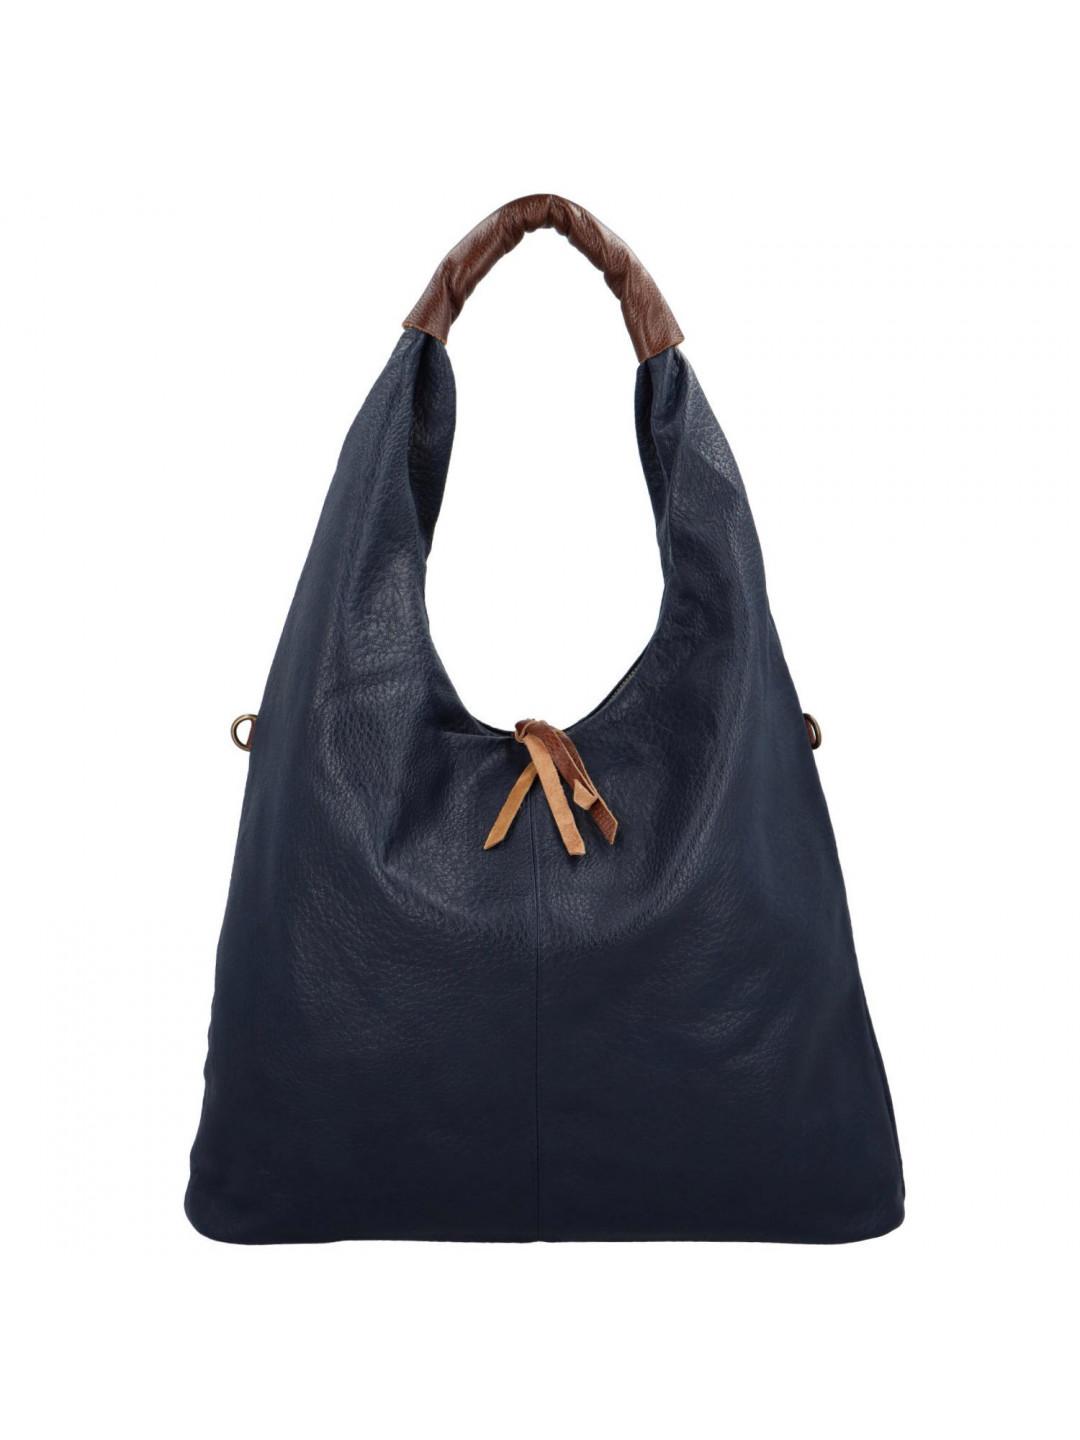 Trendová dámská kabelka přes rameno Talia modrá